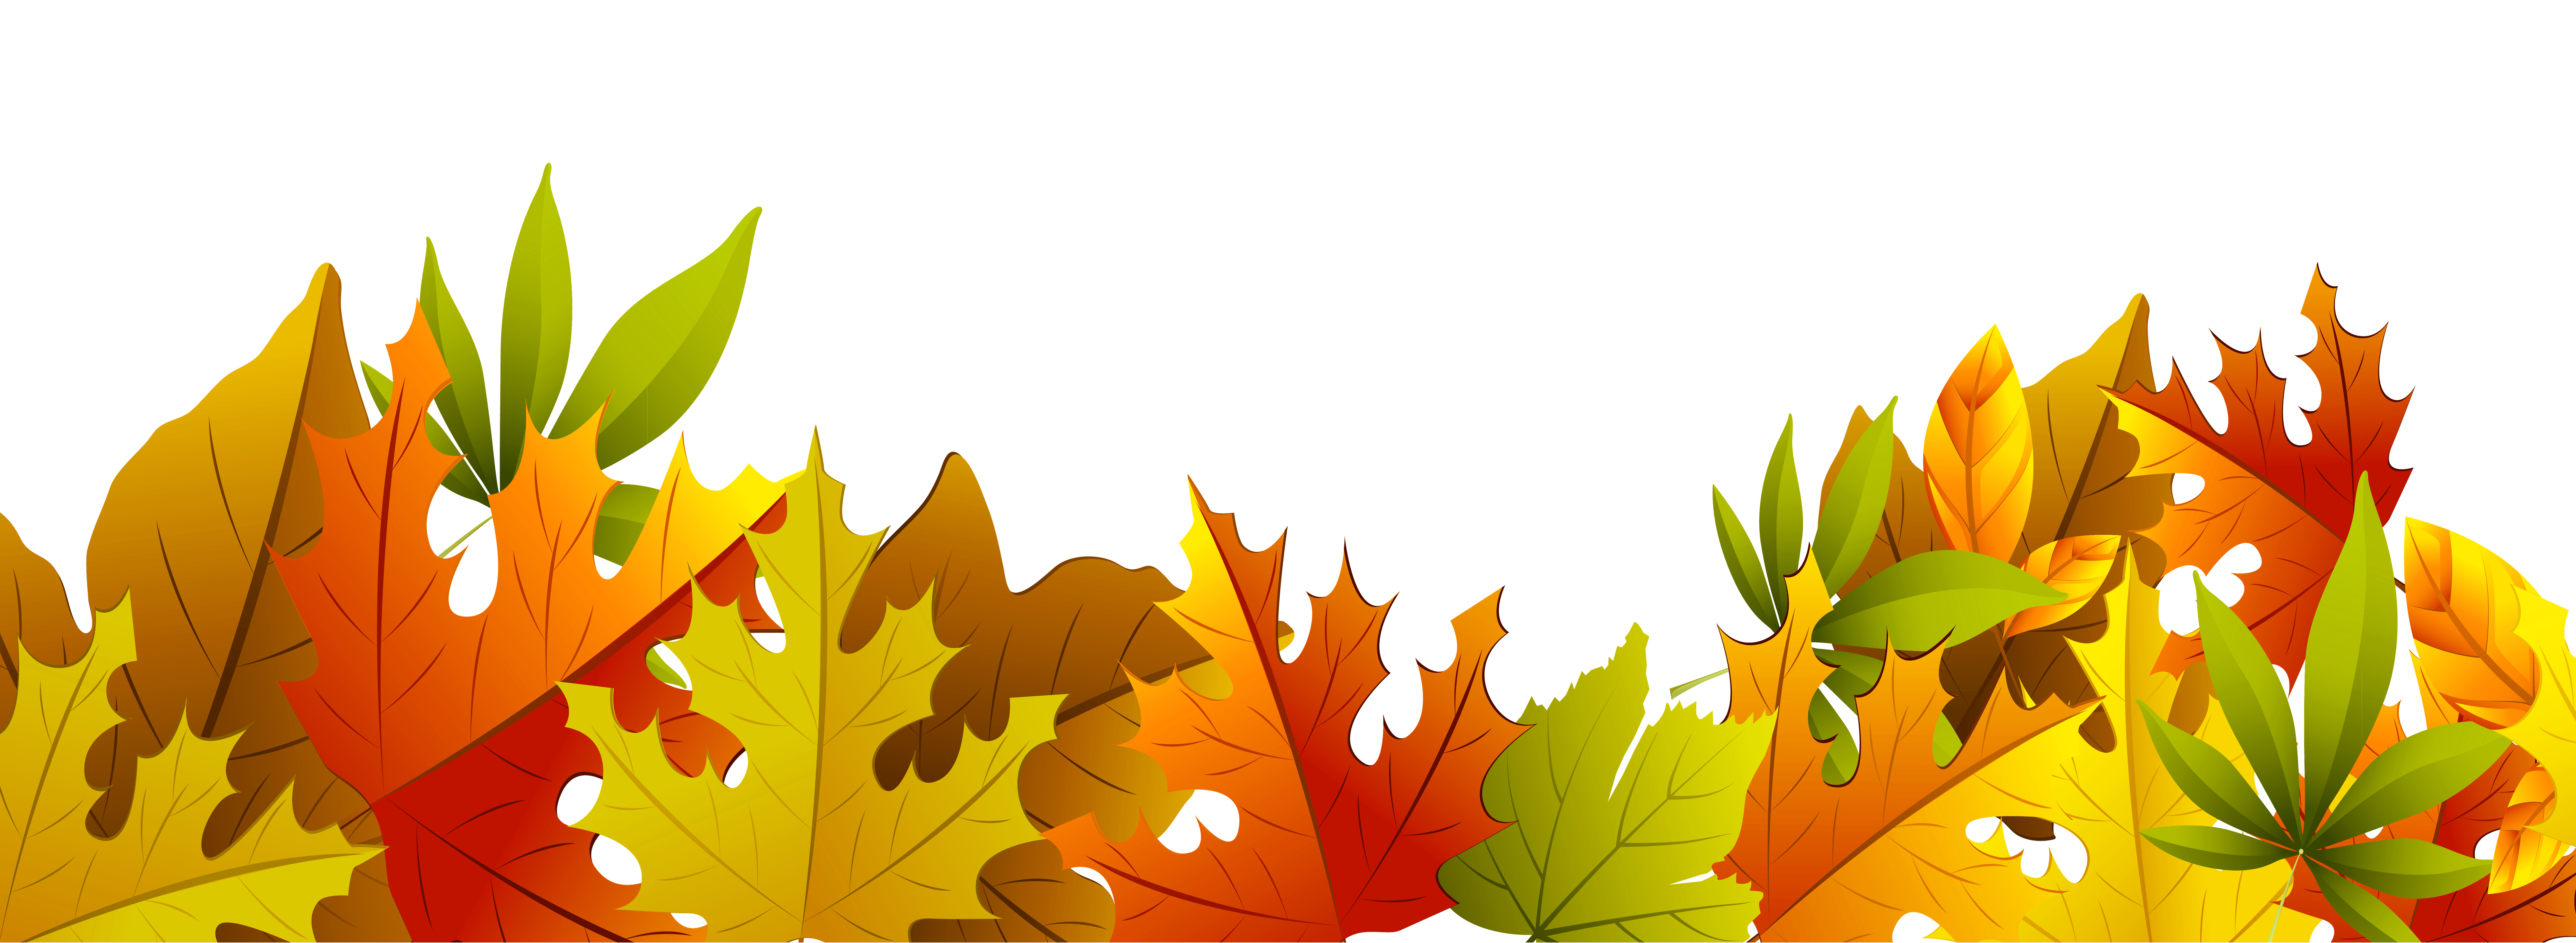 Decorative autumn leaves clipart - Clipartix